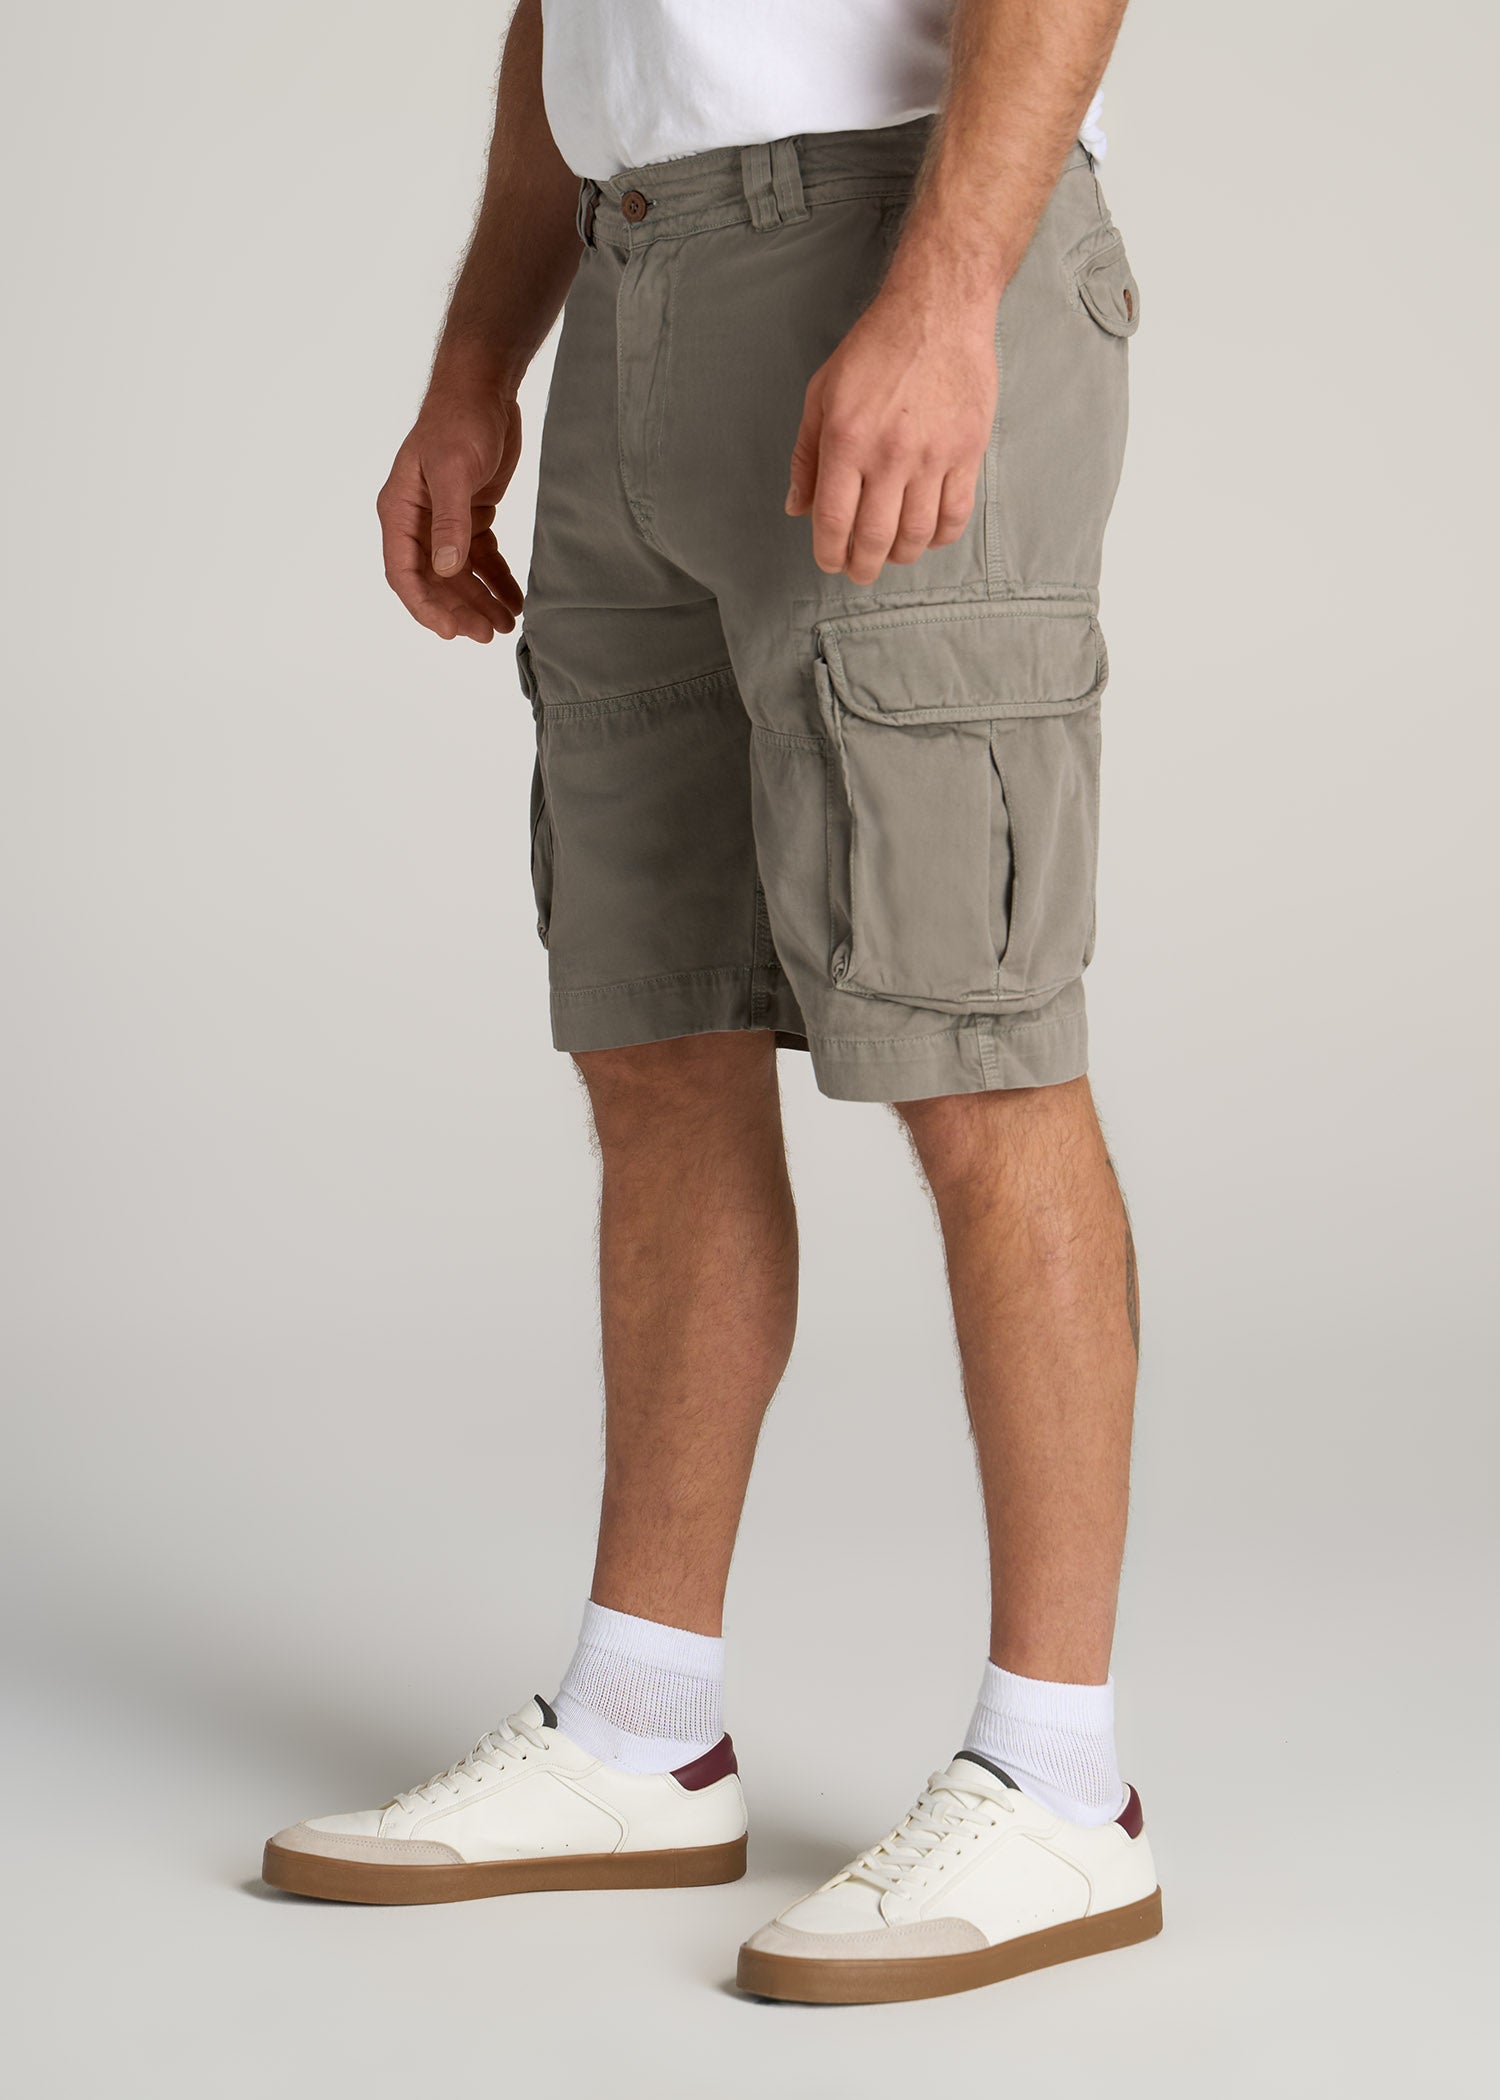       American-Tall-Men-LJ-Cargo-Pocket-Shorts-Medium-Stone-Grey-side